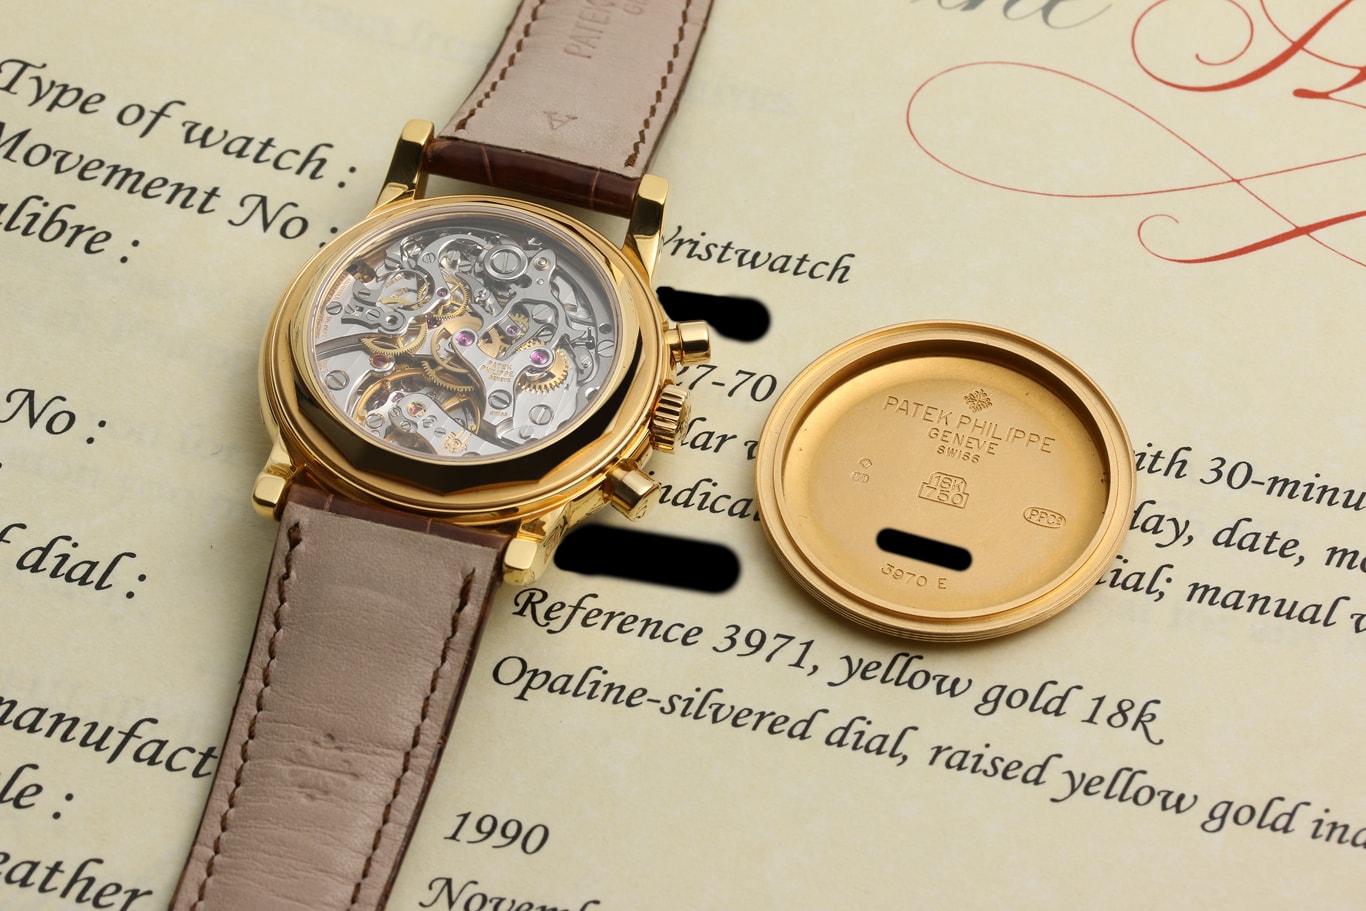 Tổng hợp: Dòng sự kiện những chiếc đồng hồ Patek Philippe với chức năng phức tạp - Lịch vạn niên kết hợp Chronograph (Phần 2)